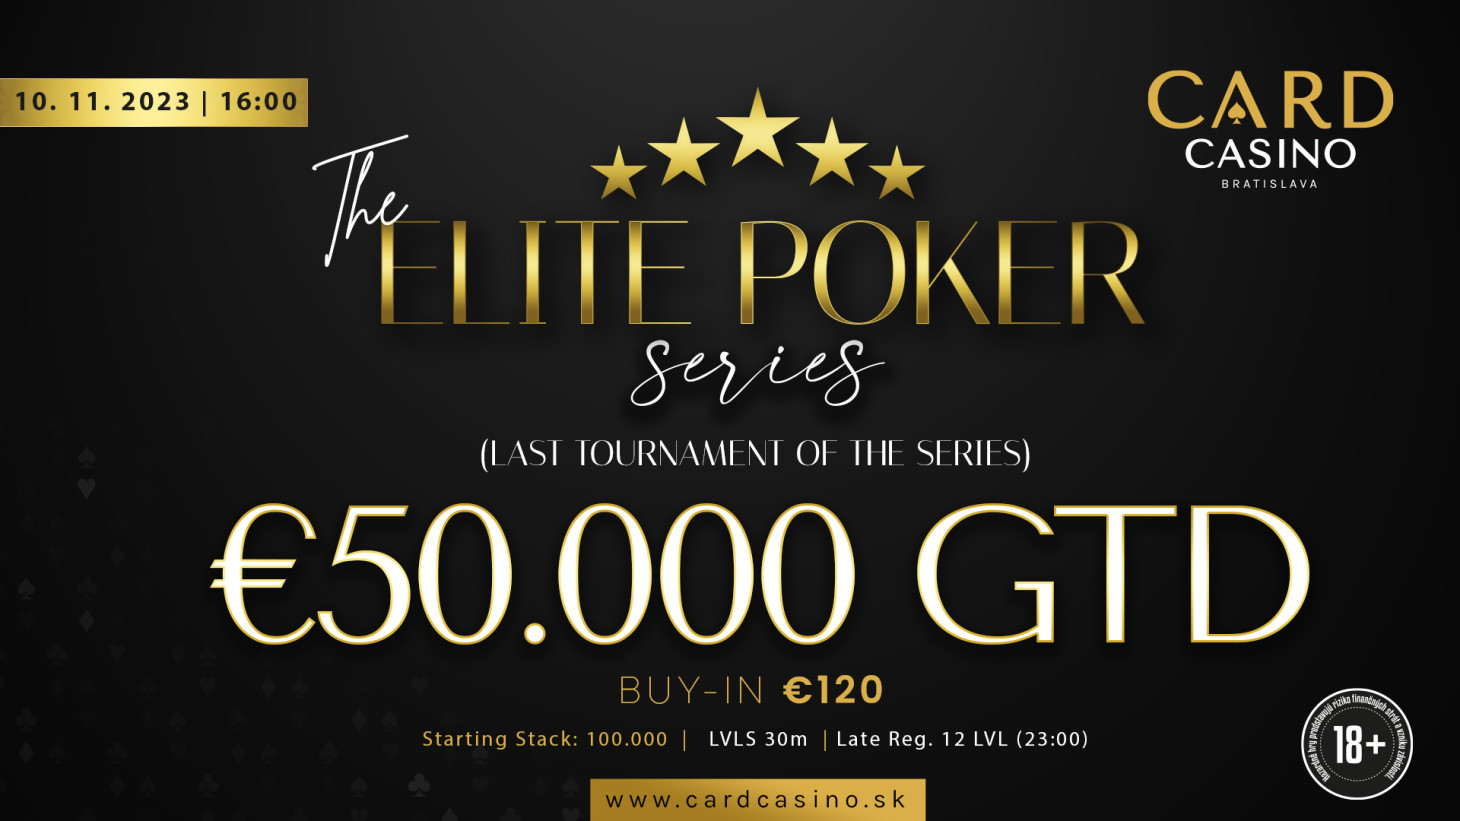 Eine Woche Mega-Poker an einem Tag. Fast 100.000 € stehen auf dem Spiel, die ELITE-Serie erreicht ihren Höhepunkt